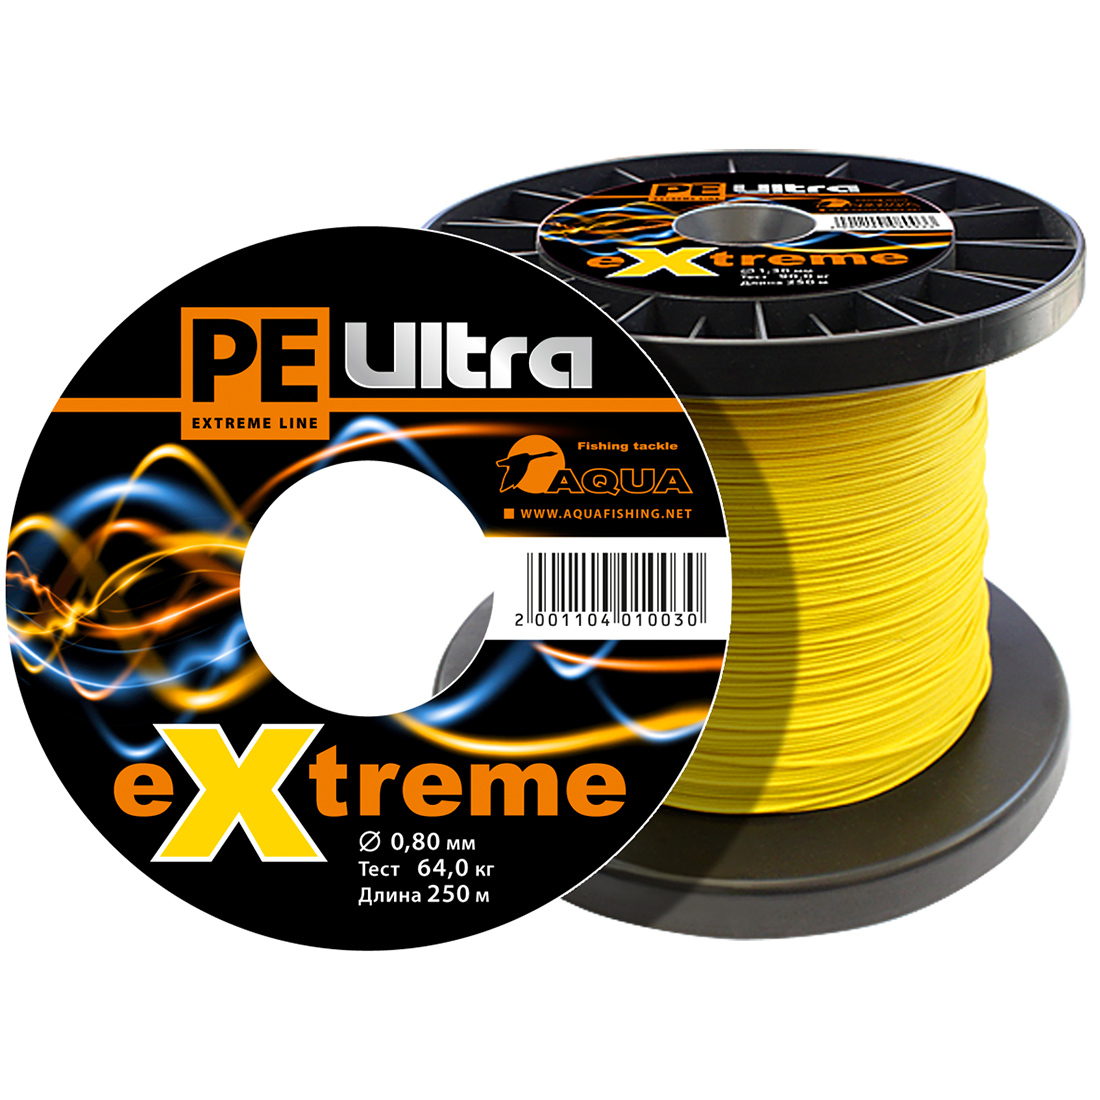 Плетеный Шнур Для Рыбалки Aqua Pe Ultra Extreme 0,80mm (Цвет Желтый) 250m